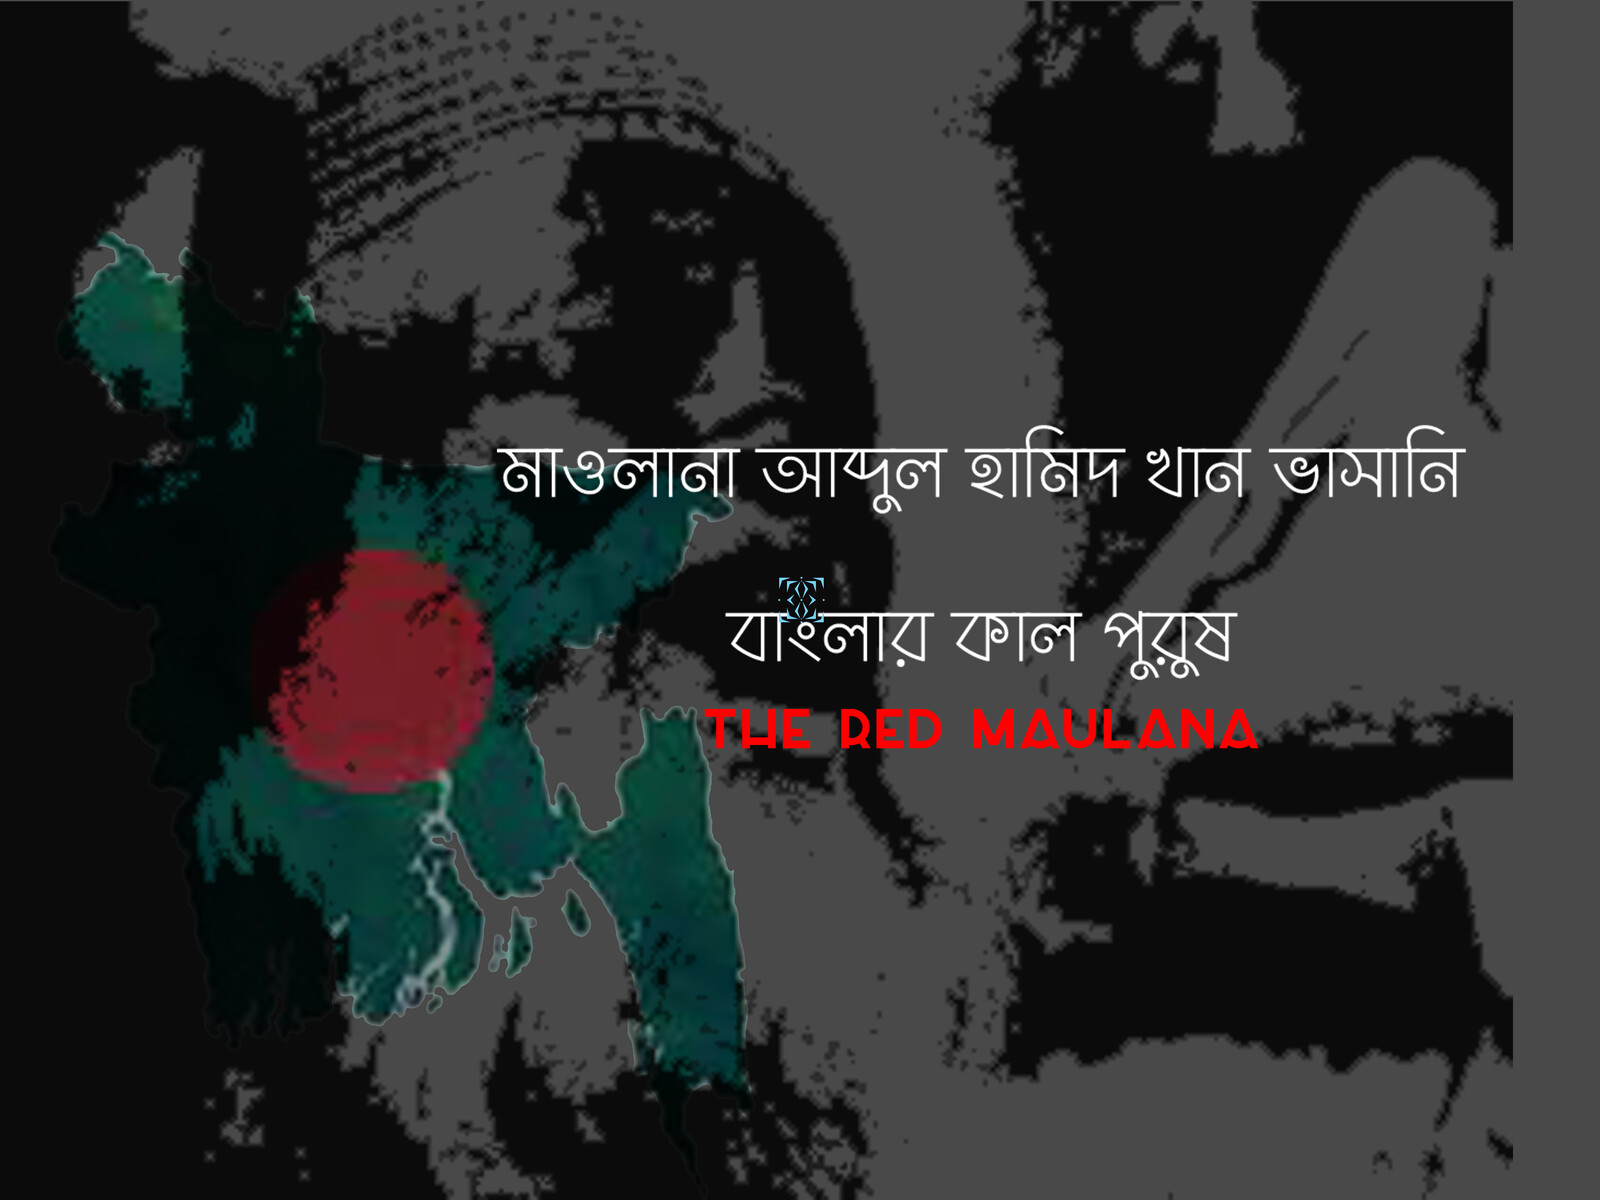 The red Maulana